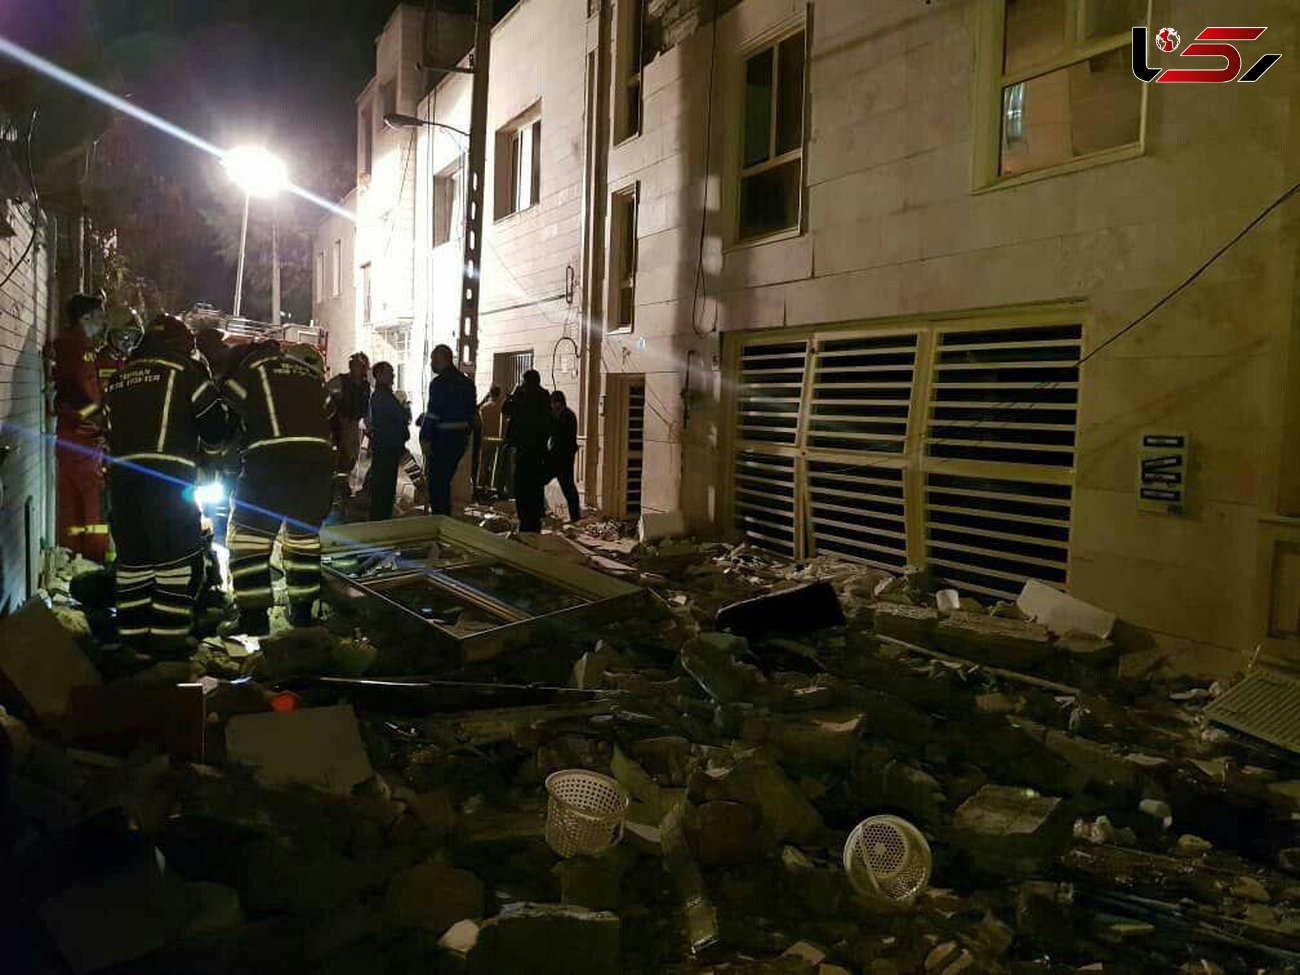 انفجار شدید در ساختمان ۴ طبقه در خیابان چشمه علی+ عکس